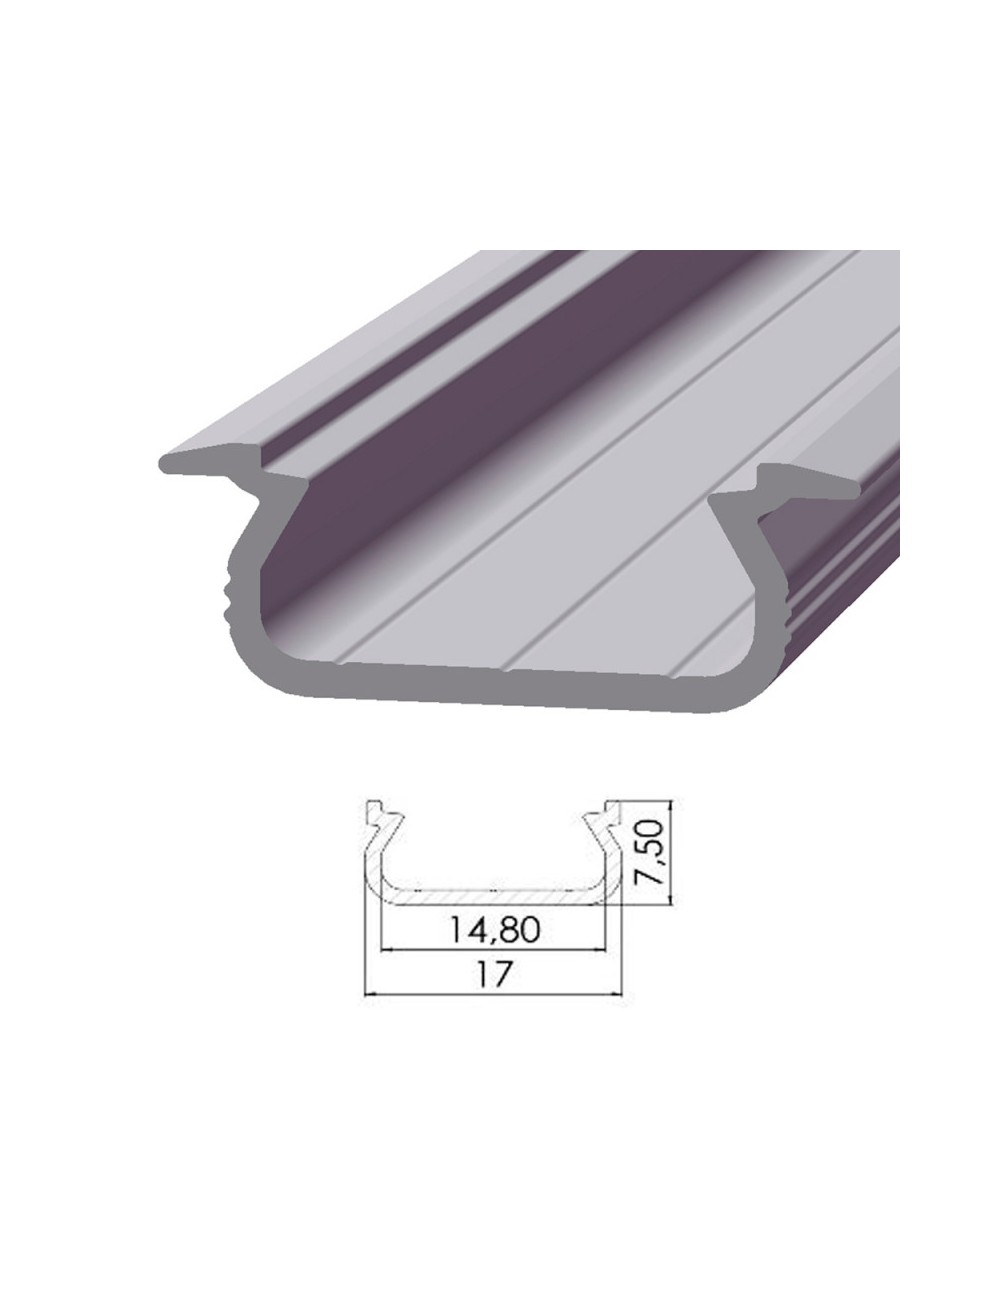 Profil Aluminium Type ECO P02 1,00M